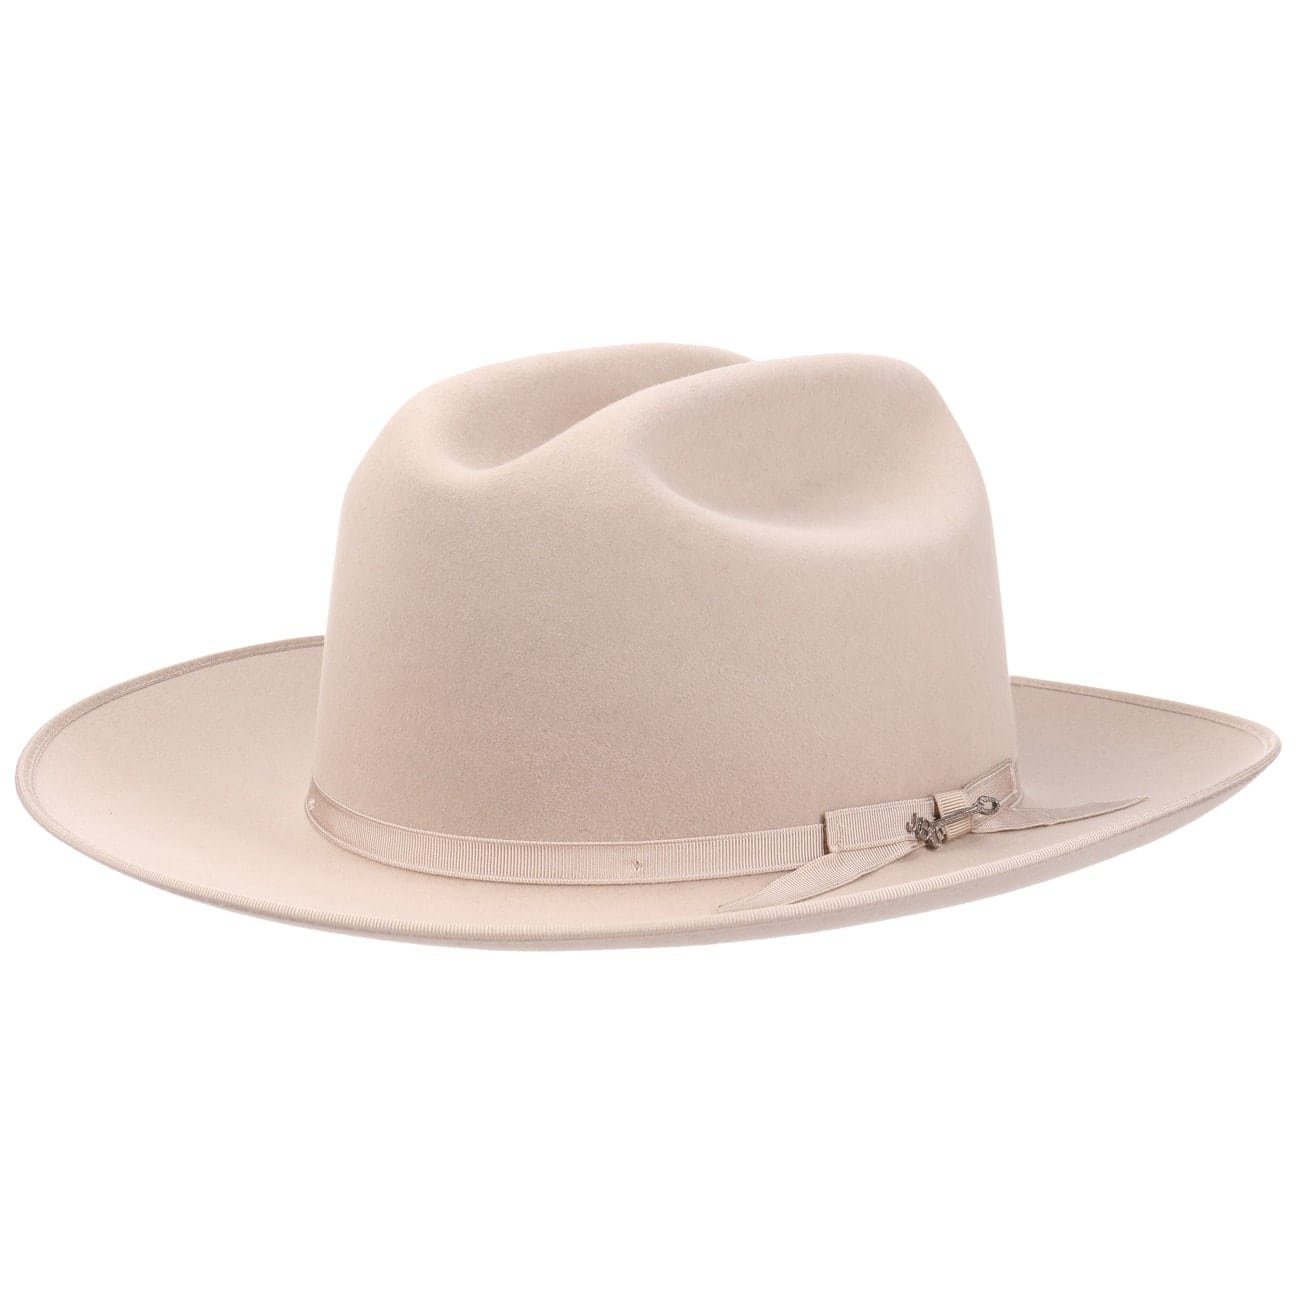 Stetson Herren Cowboyhüte online kaufen | OTTO